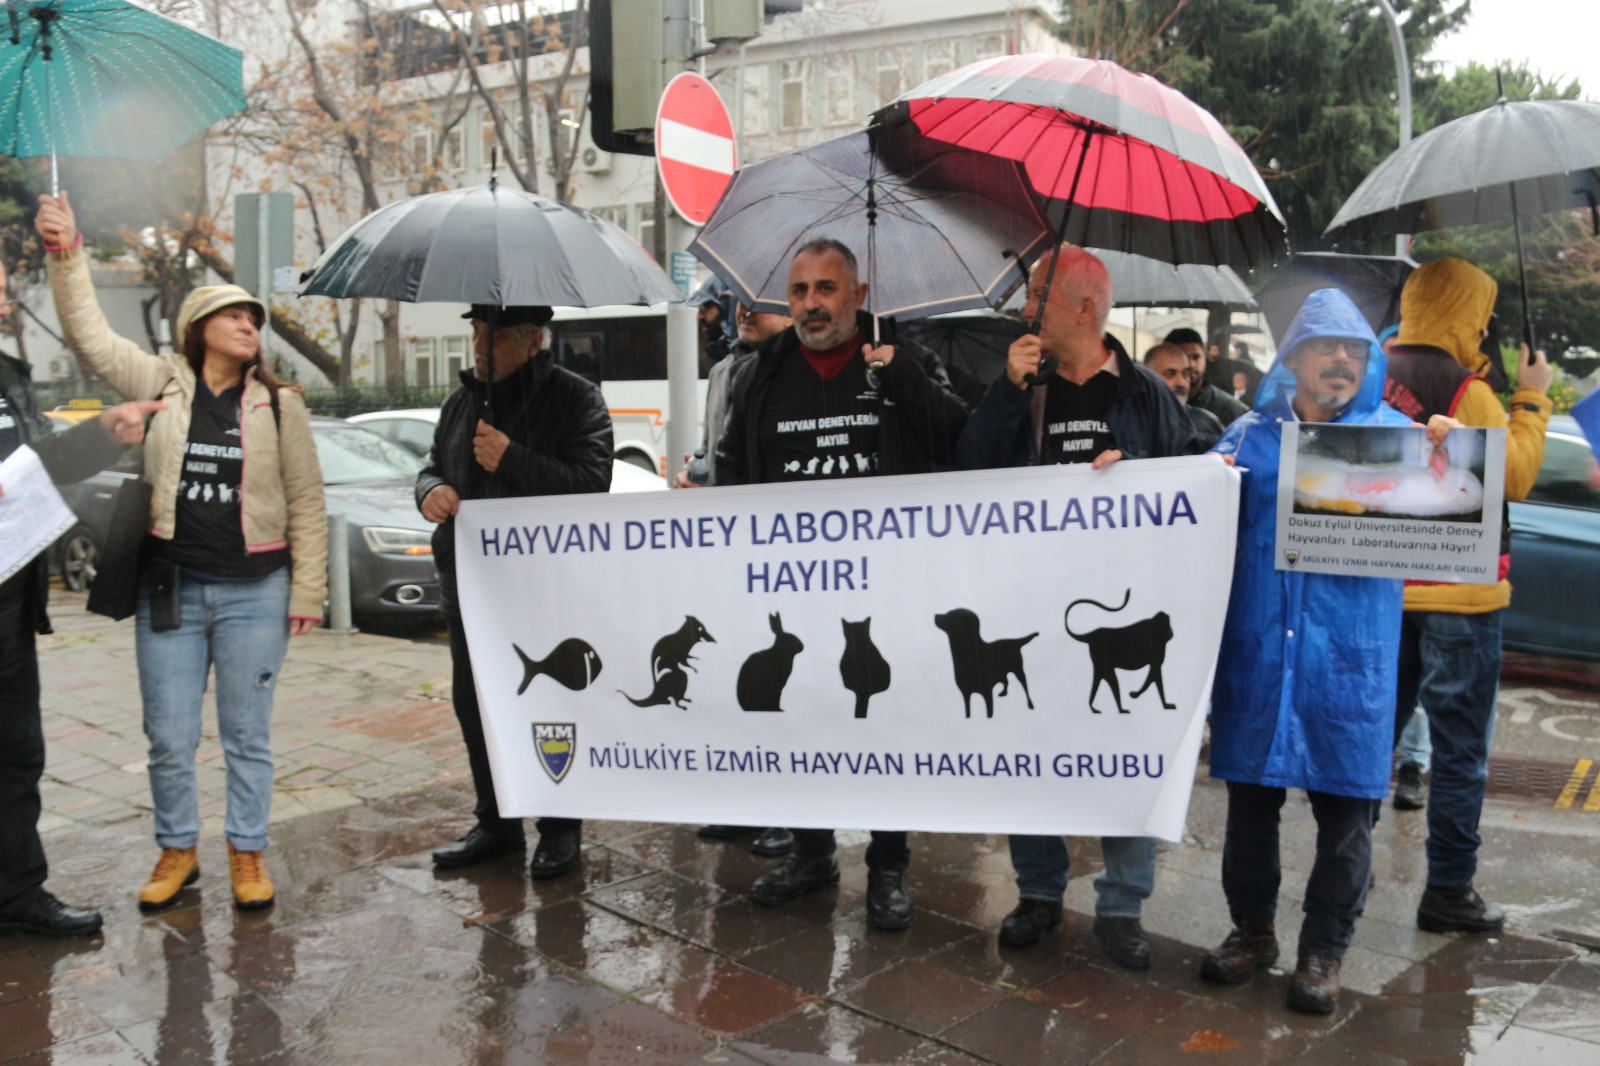 Mülkiye İzmir Hayvan Hakları